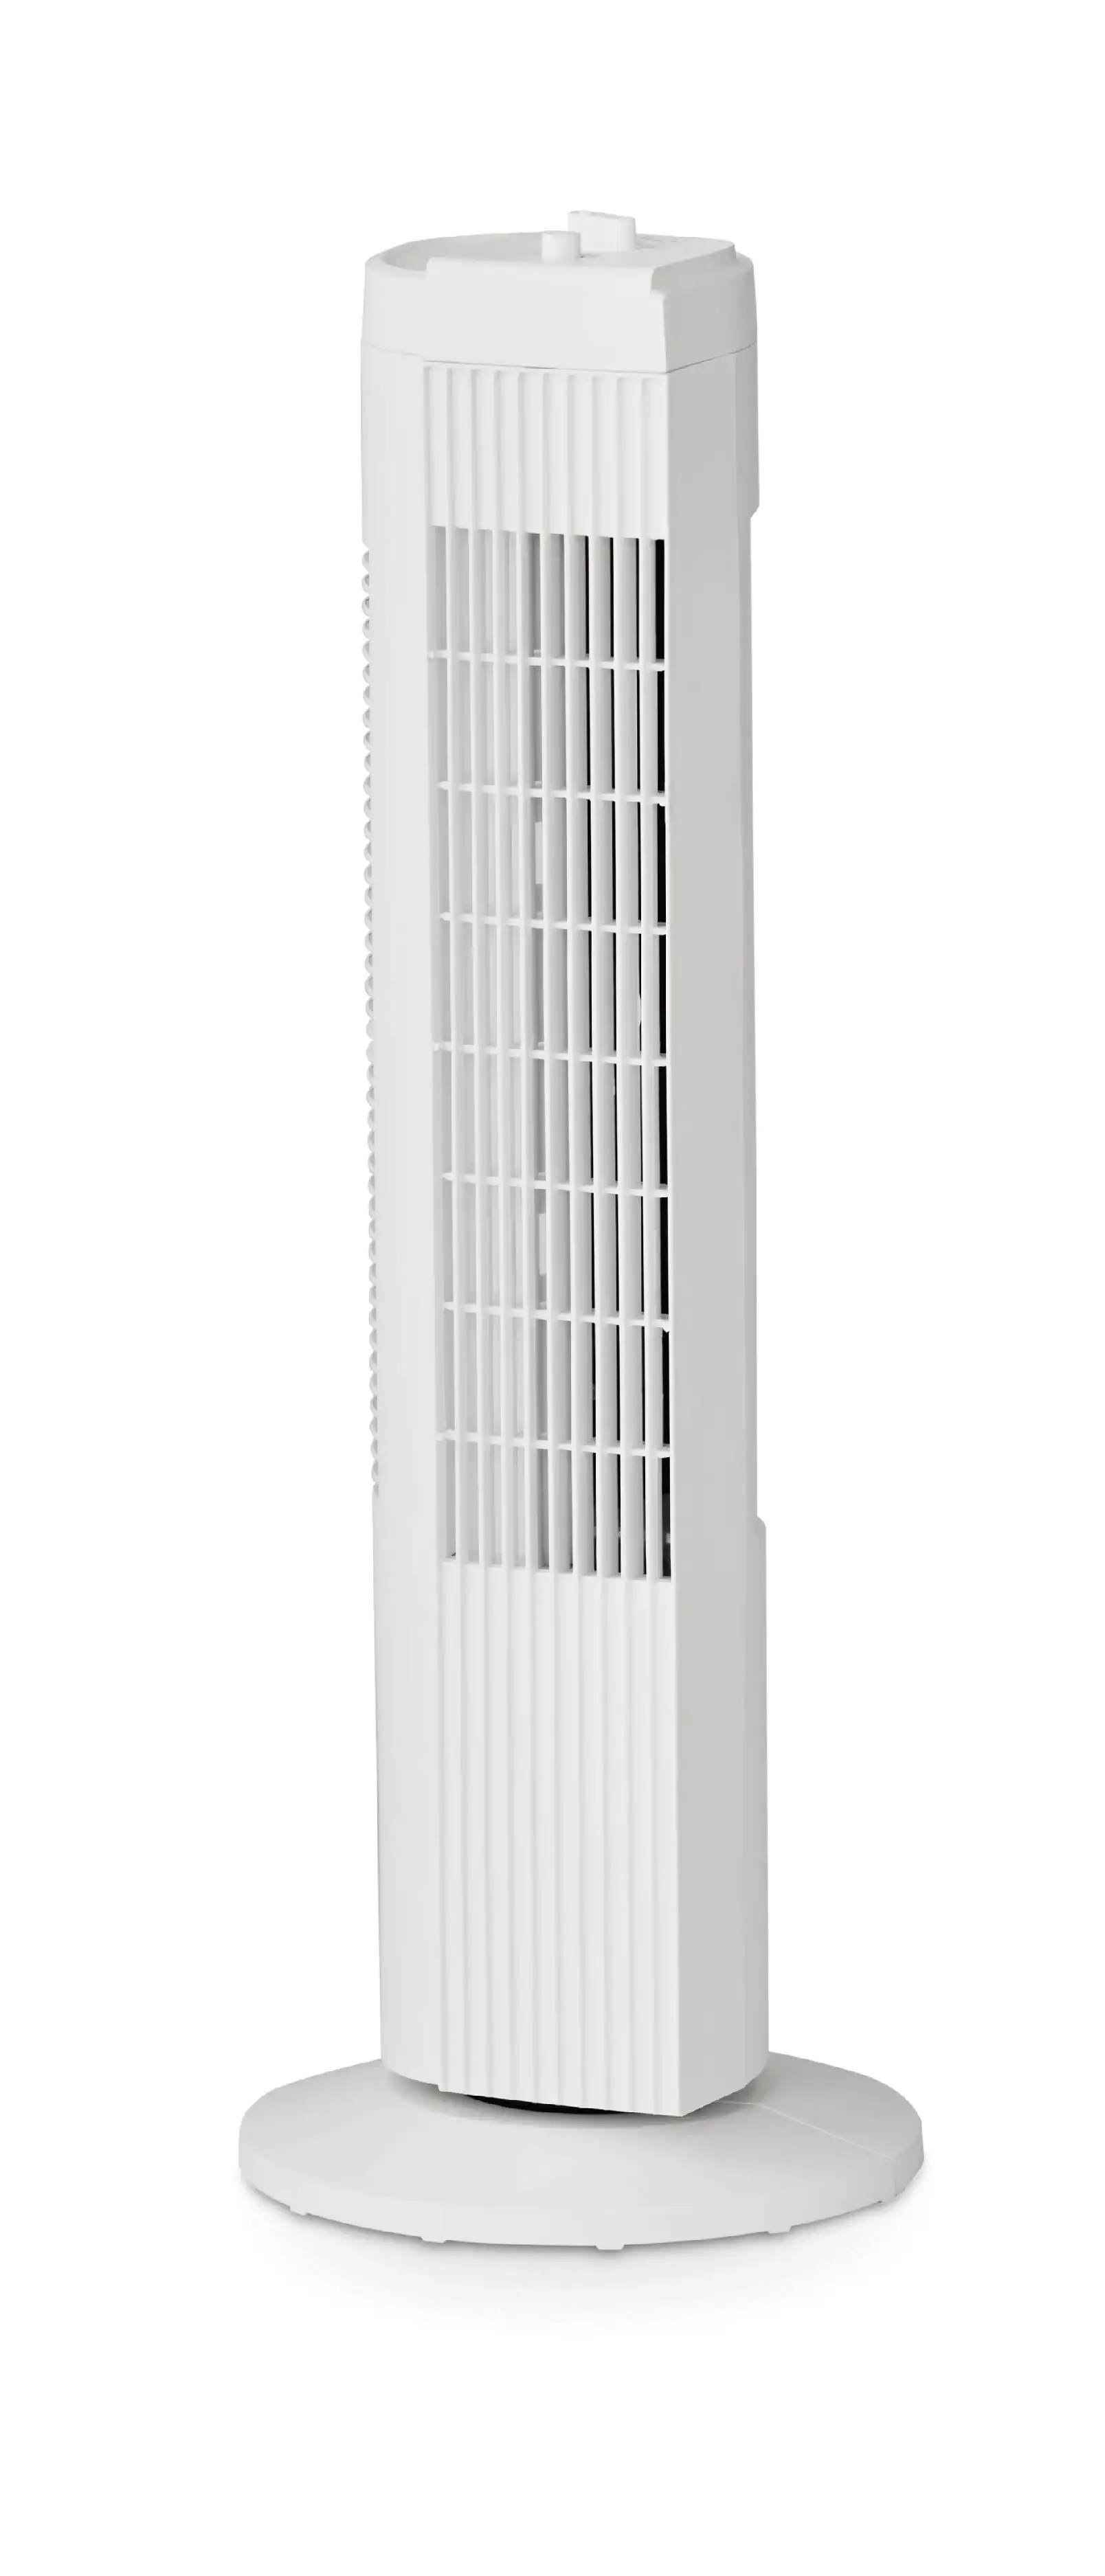 Трехскоростной башенный вентилятор, обычный для офиса, общежития, спальни, черные вентиляторы - 1